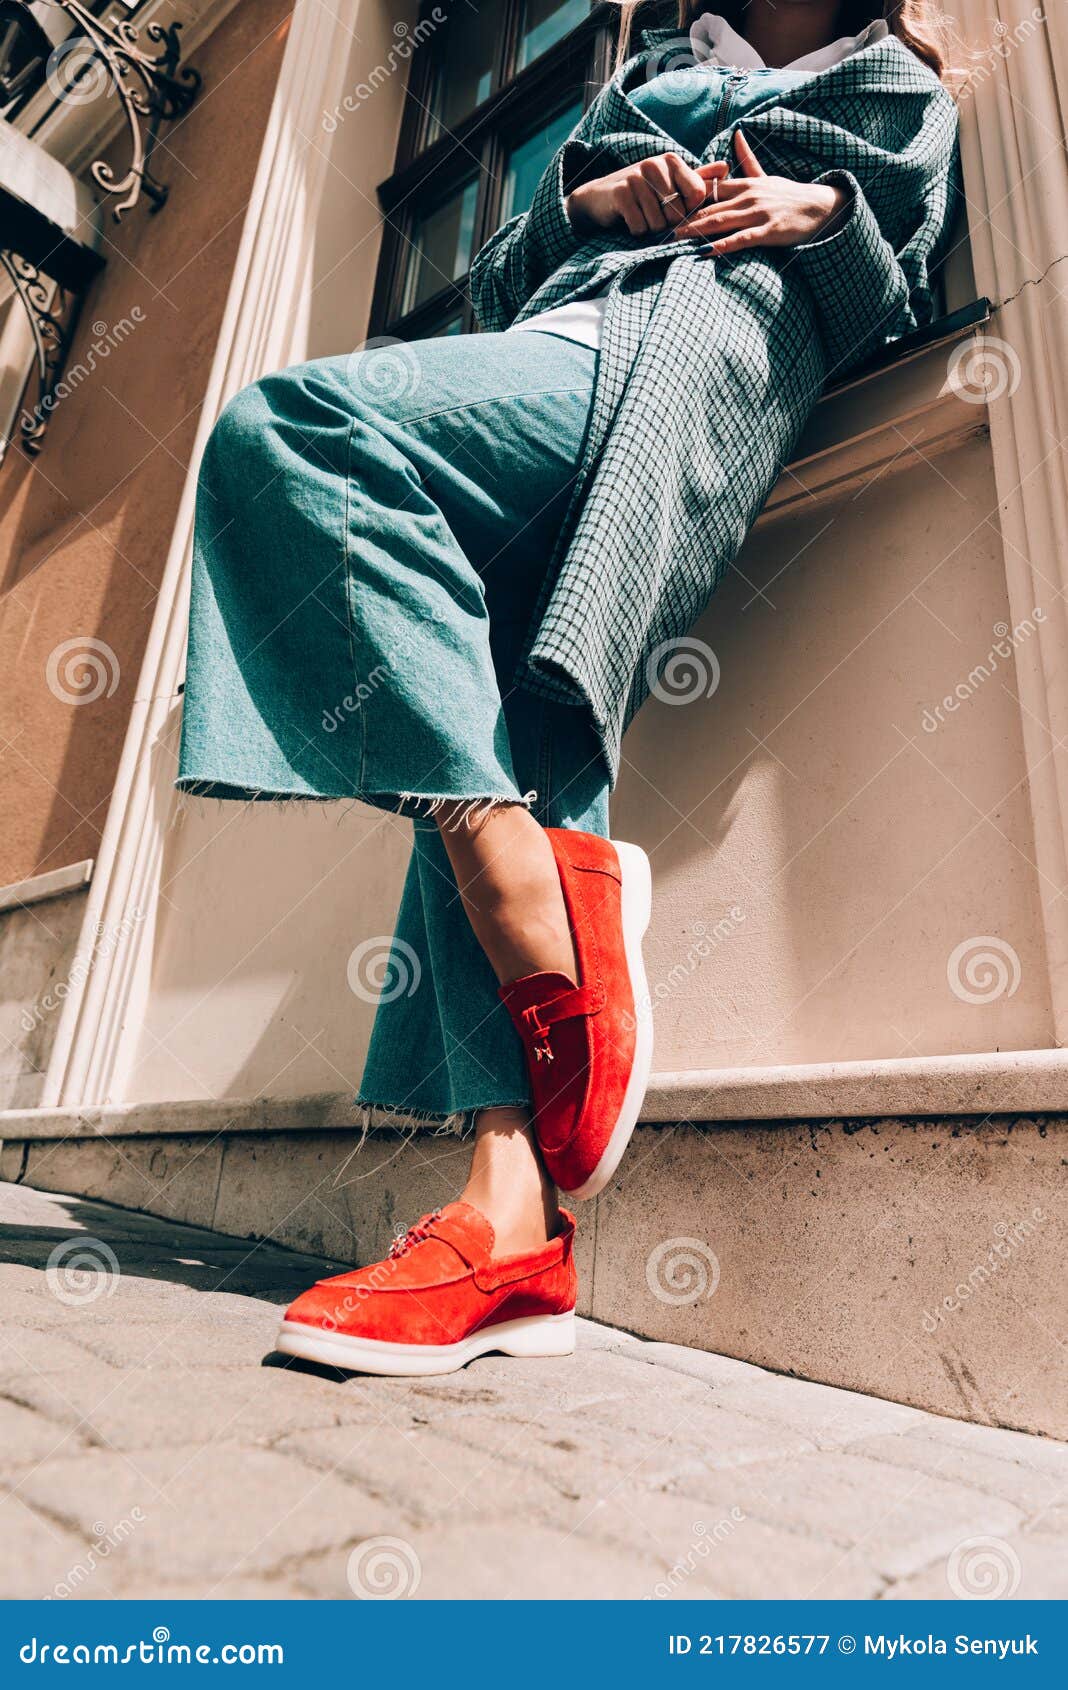 Mujer En Un Elegante Ante Rojo Zapatos Jeanse Azul Camisa Blanca Y Chaqueta a Cuadros De Moda Posando La Par Imagen de archivo - Imagen de hermoso: 217826577